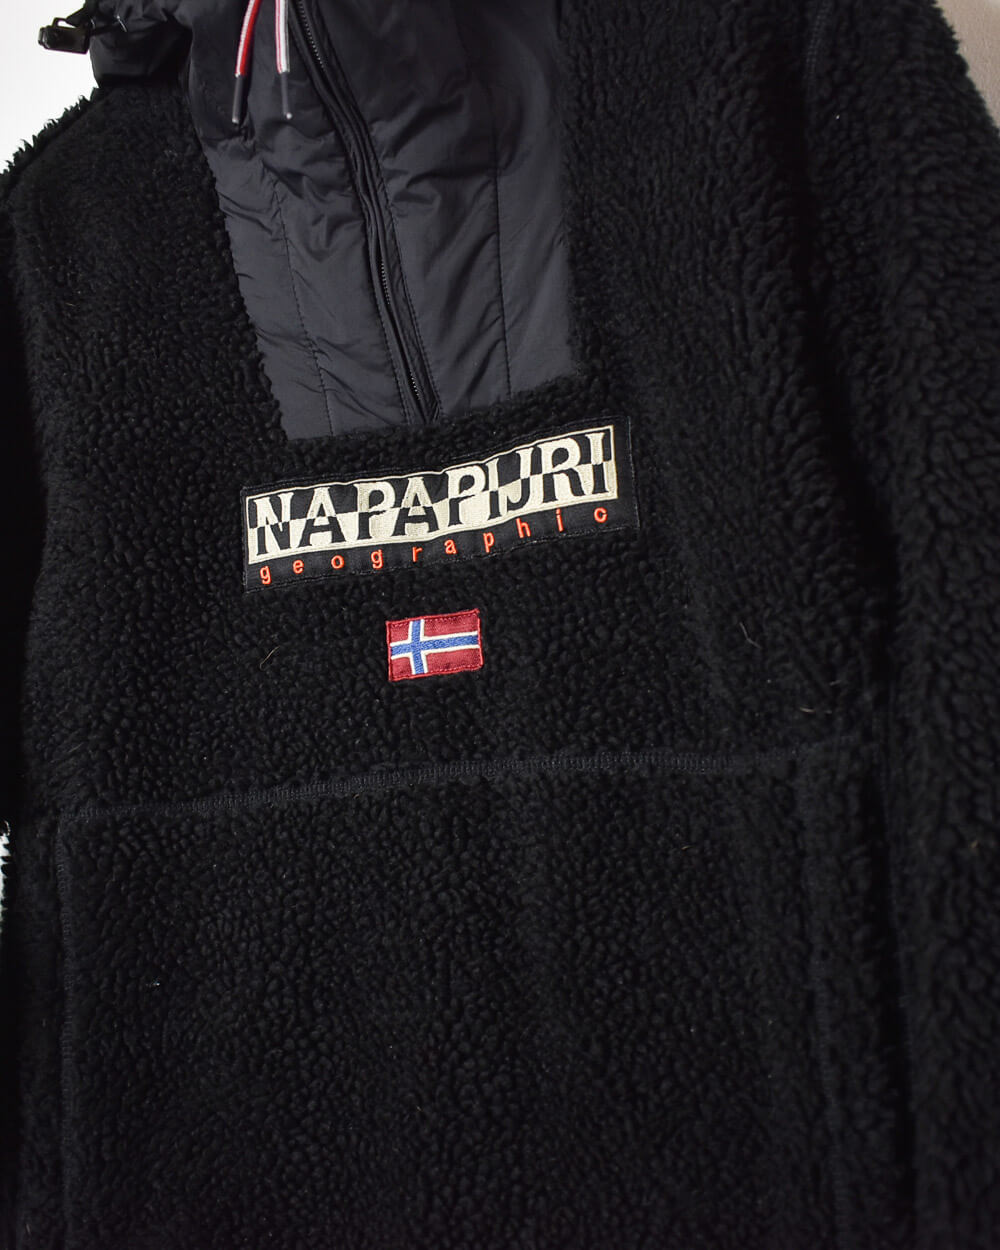 Black Napapijri Geographic Hooded 1/4 Zip Fleece - Small